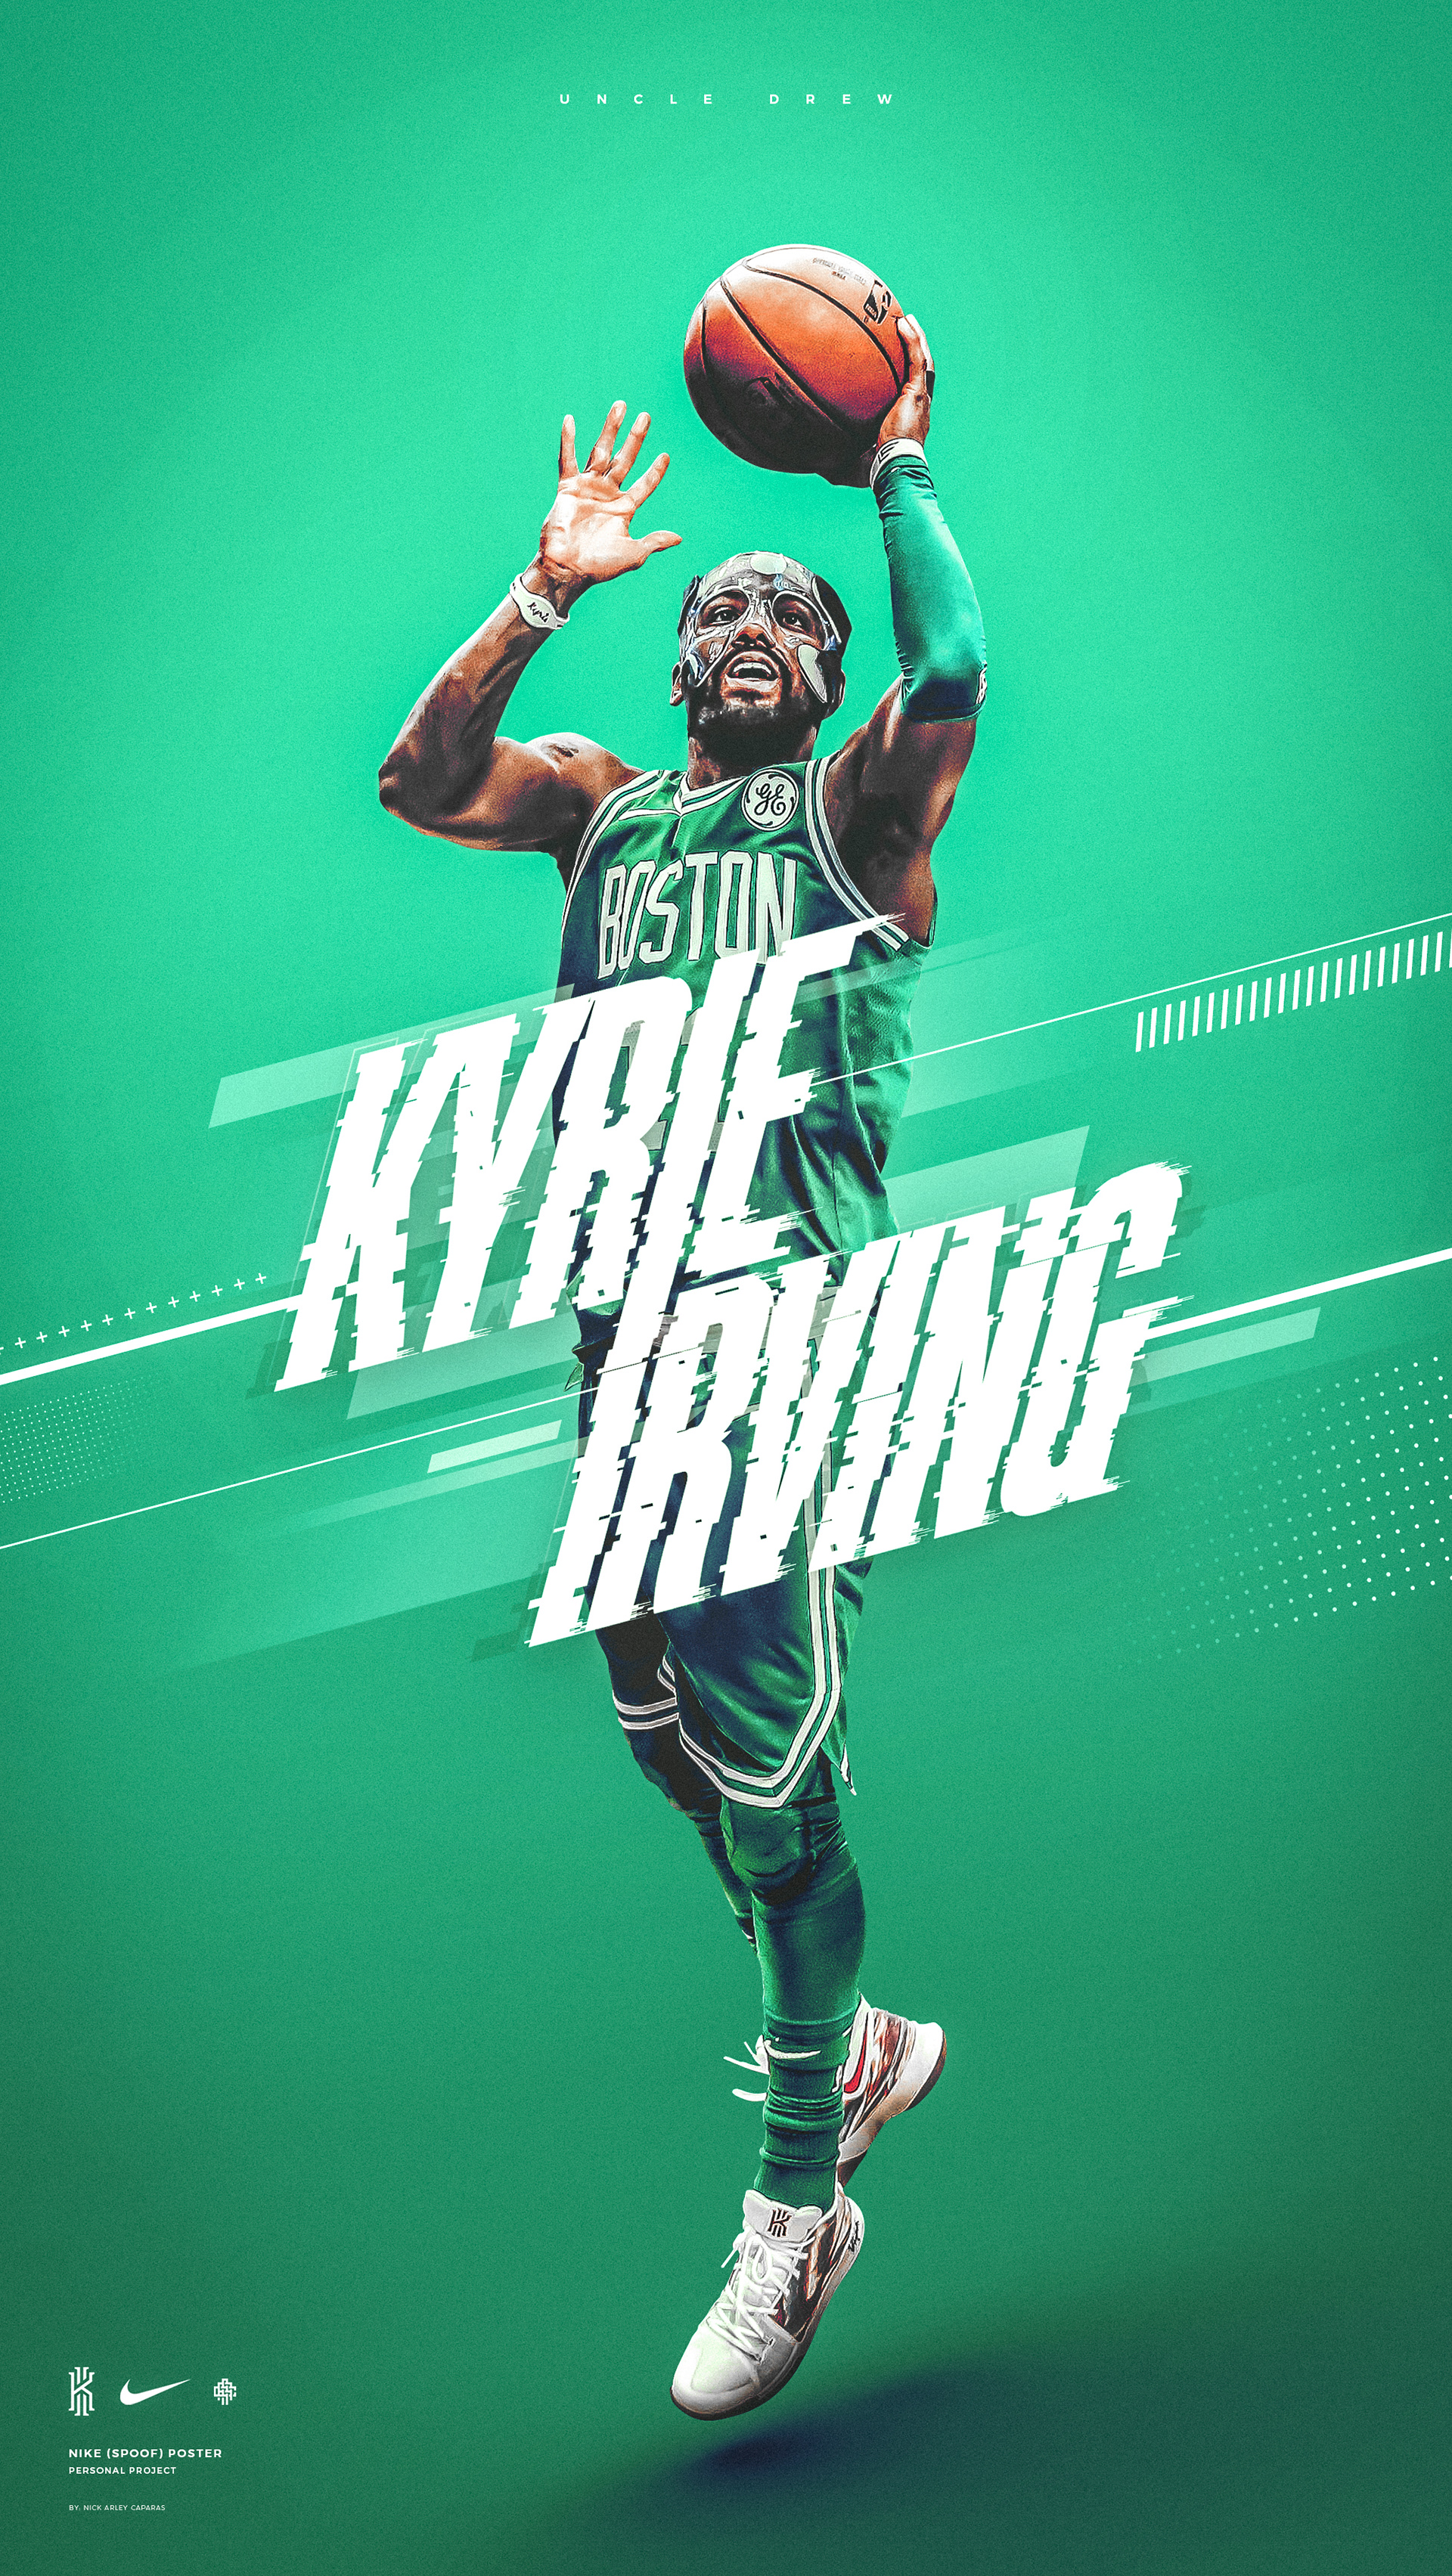 kyrie irving nike wallpaper,green,basketball,team sport,ball game,illustration